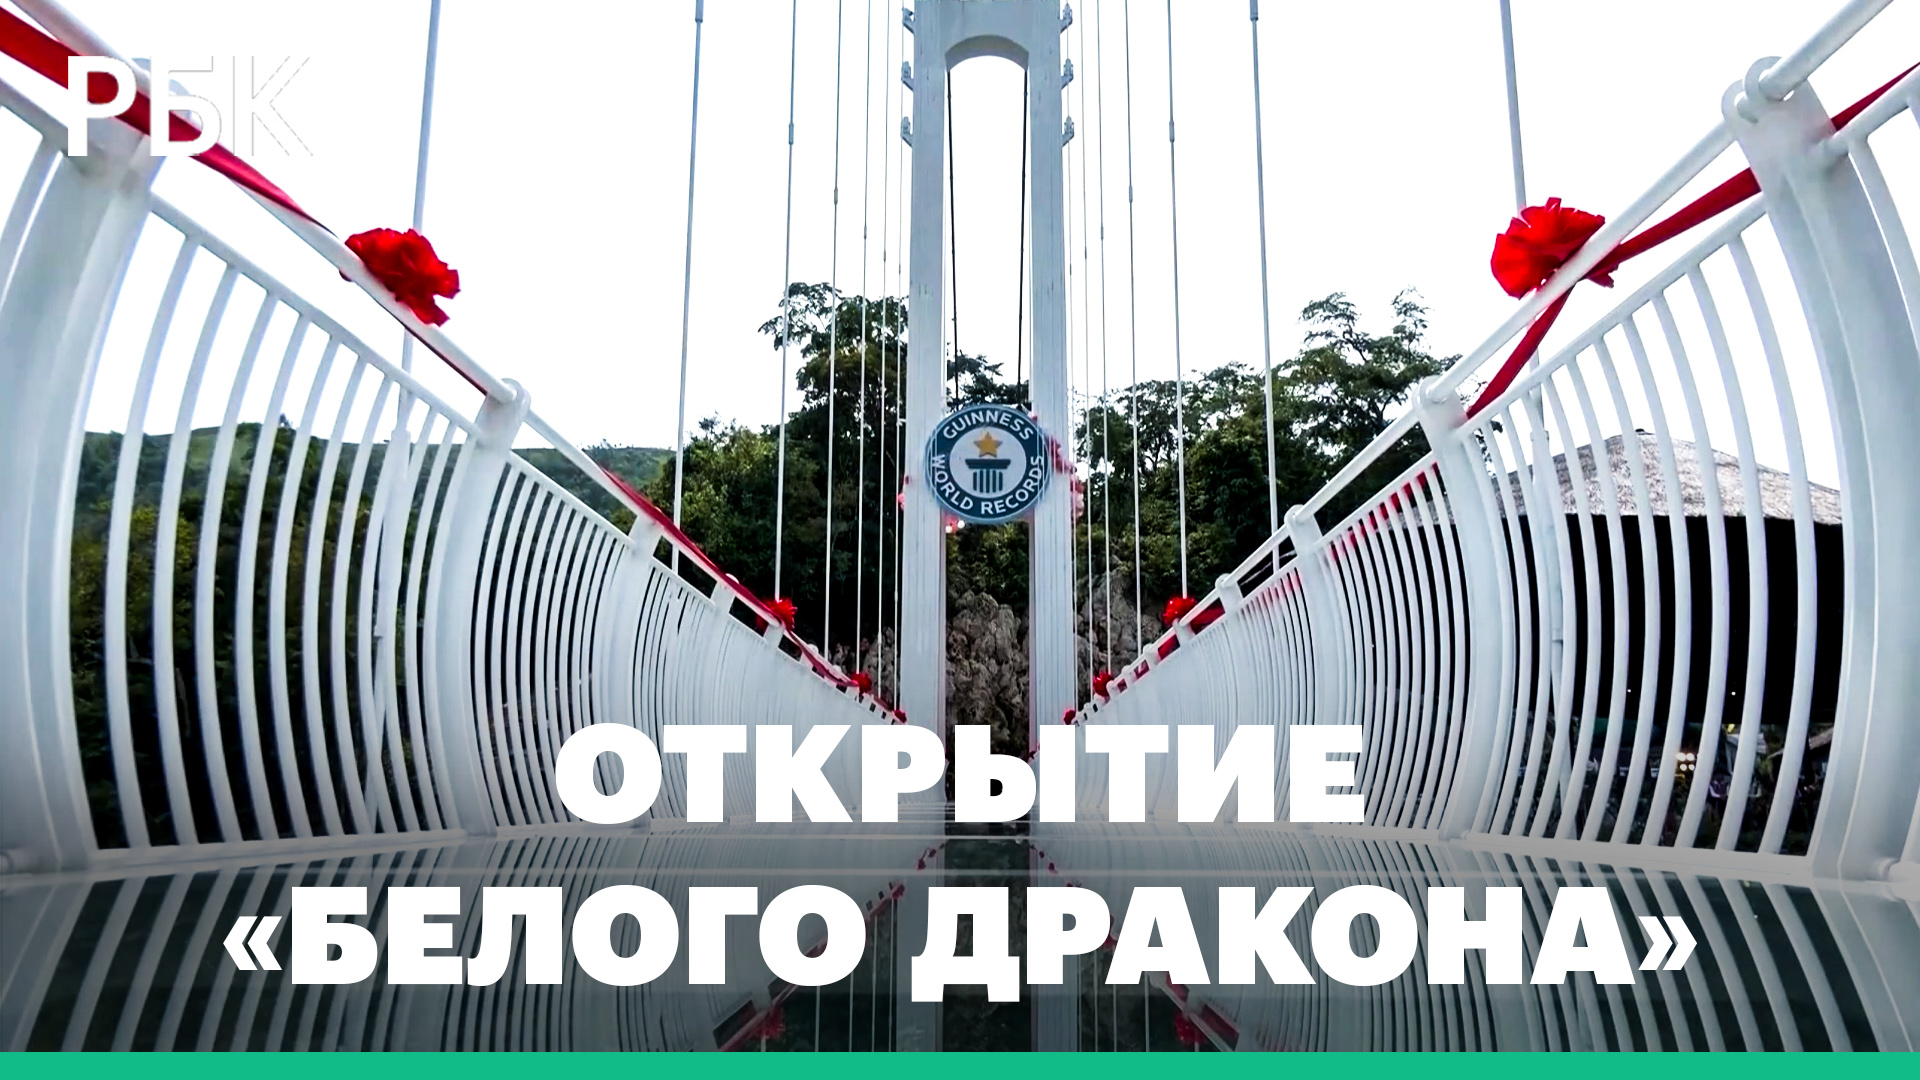 Во Вьетнаме открыли самый длинный стеклянный мост, который вошел в Книгу рекордов Гиннесса